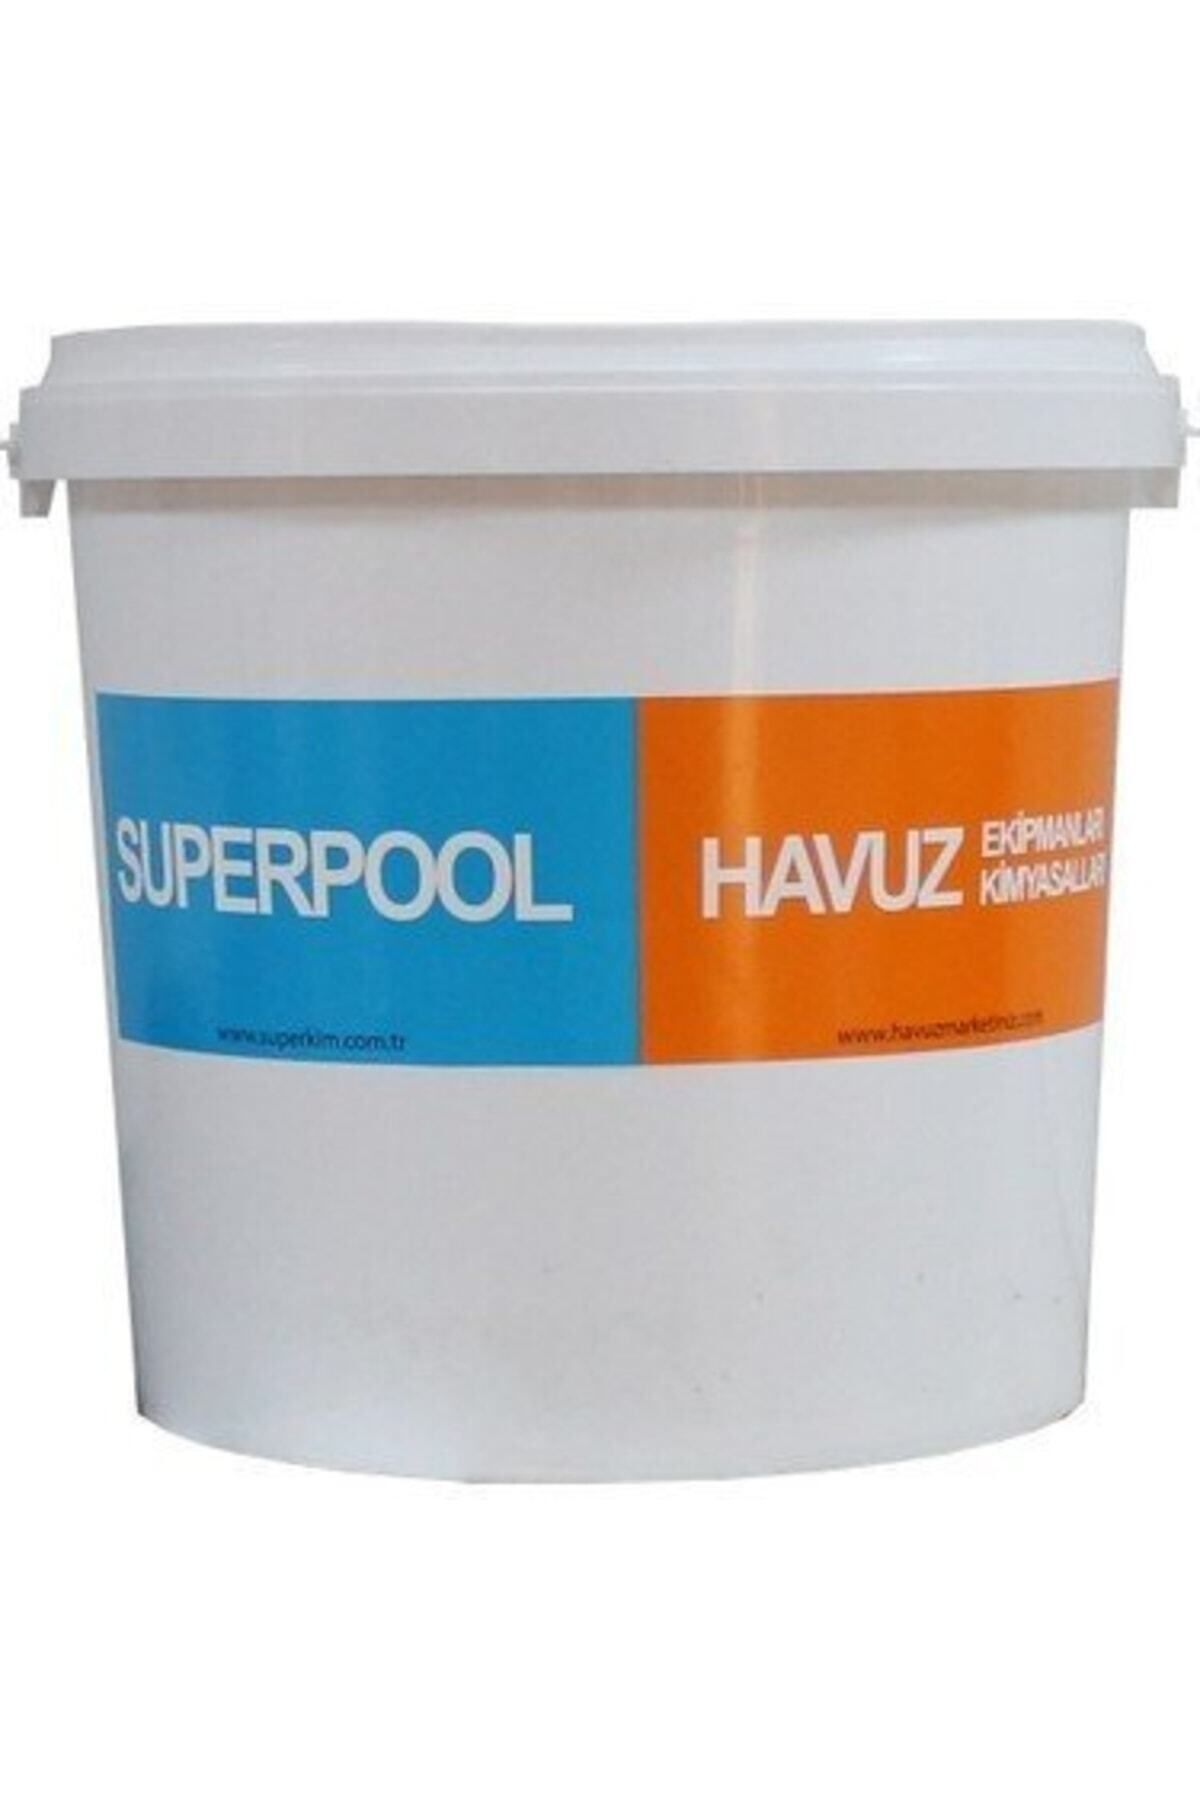 SPP SUPERPOOL Superplus 25 Kg (ph Yükseltici)